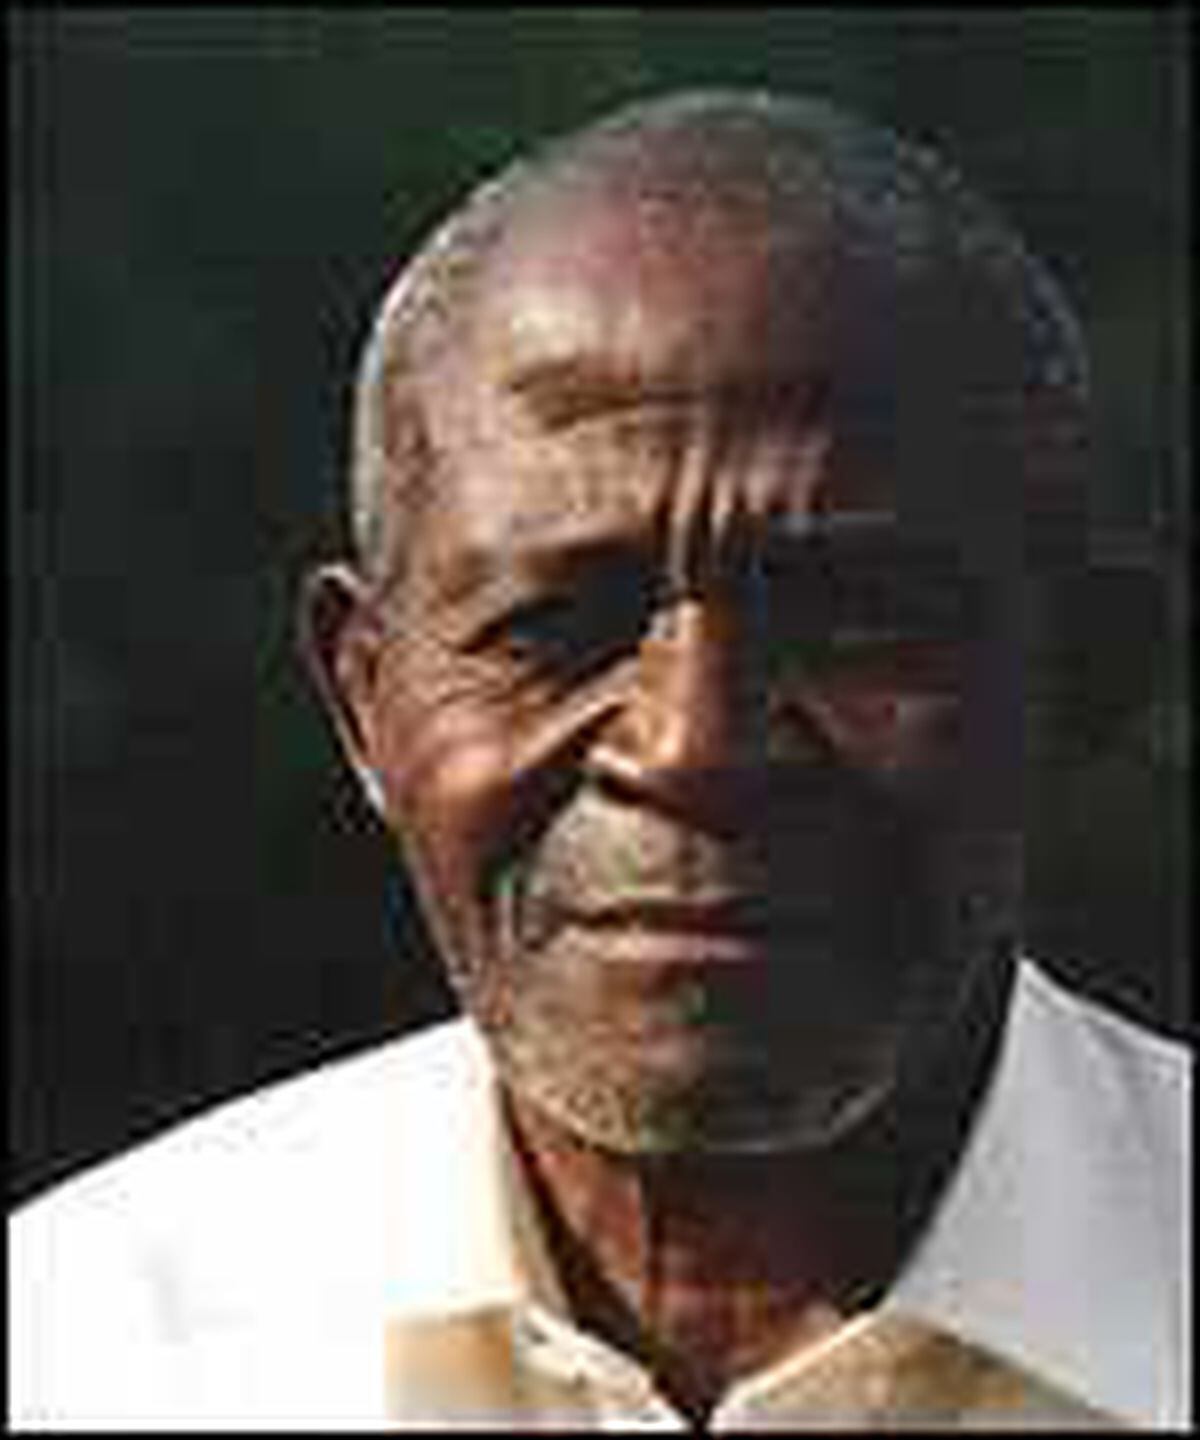 Inspiring - Dr Moses' father Majazi Aaron Munawa